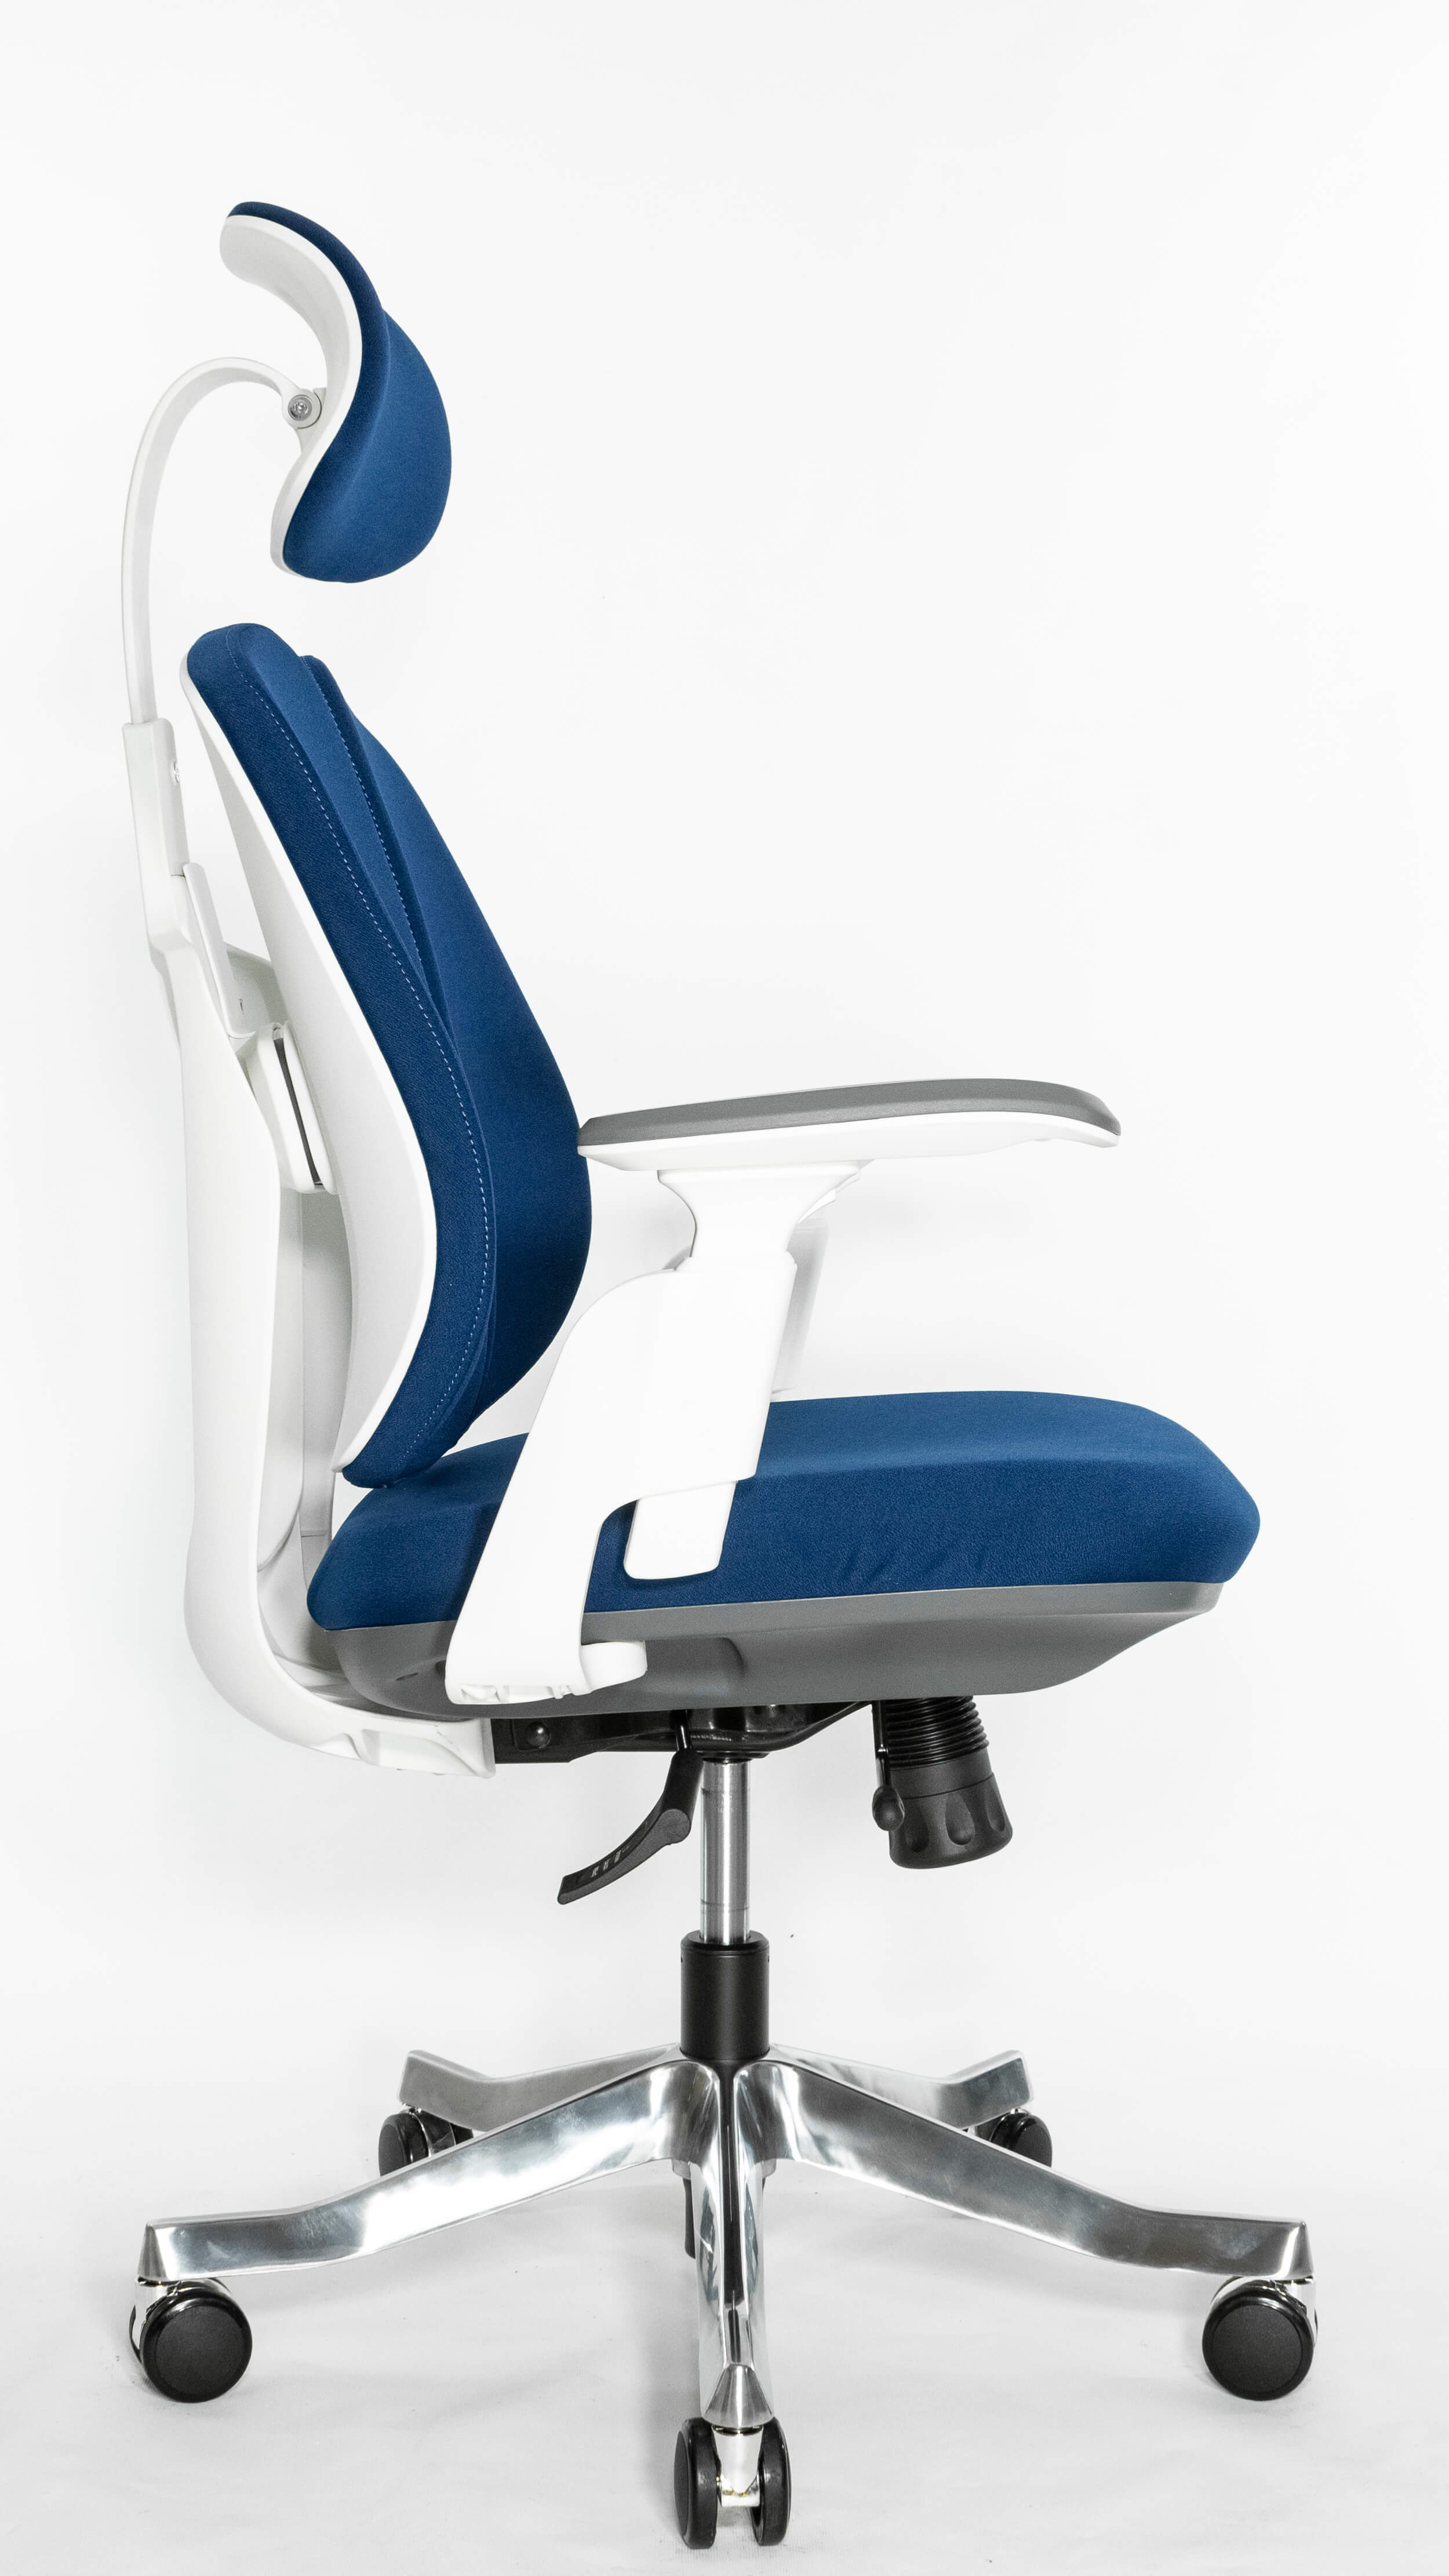 Ортопедическое кресло Falto ORTO-BIONIC A92-2W Fabrik-WH-BL (каркас светлый / ткань BLUE)